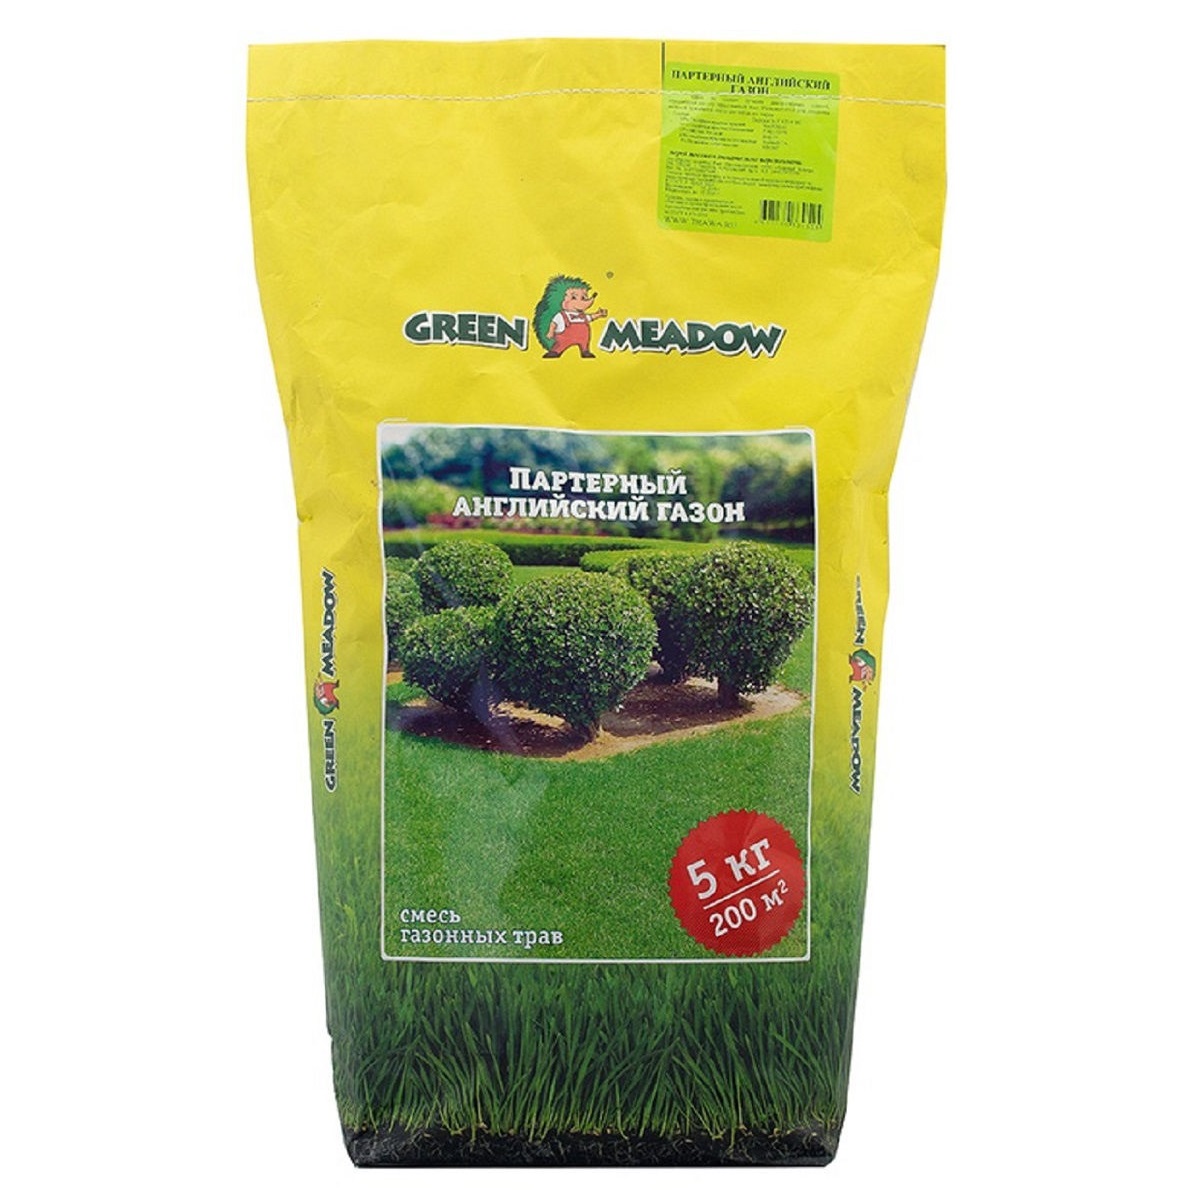 Газон Green Meadow партерный английский 5 кг газон green meadow декоративный элитарный 1 кг